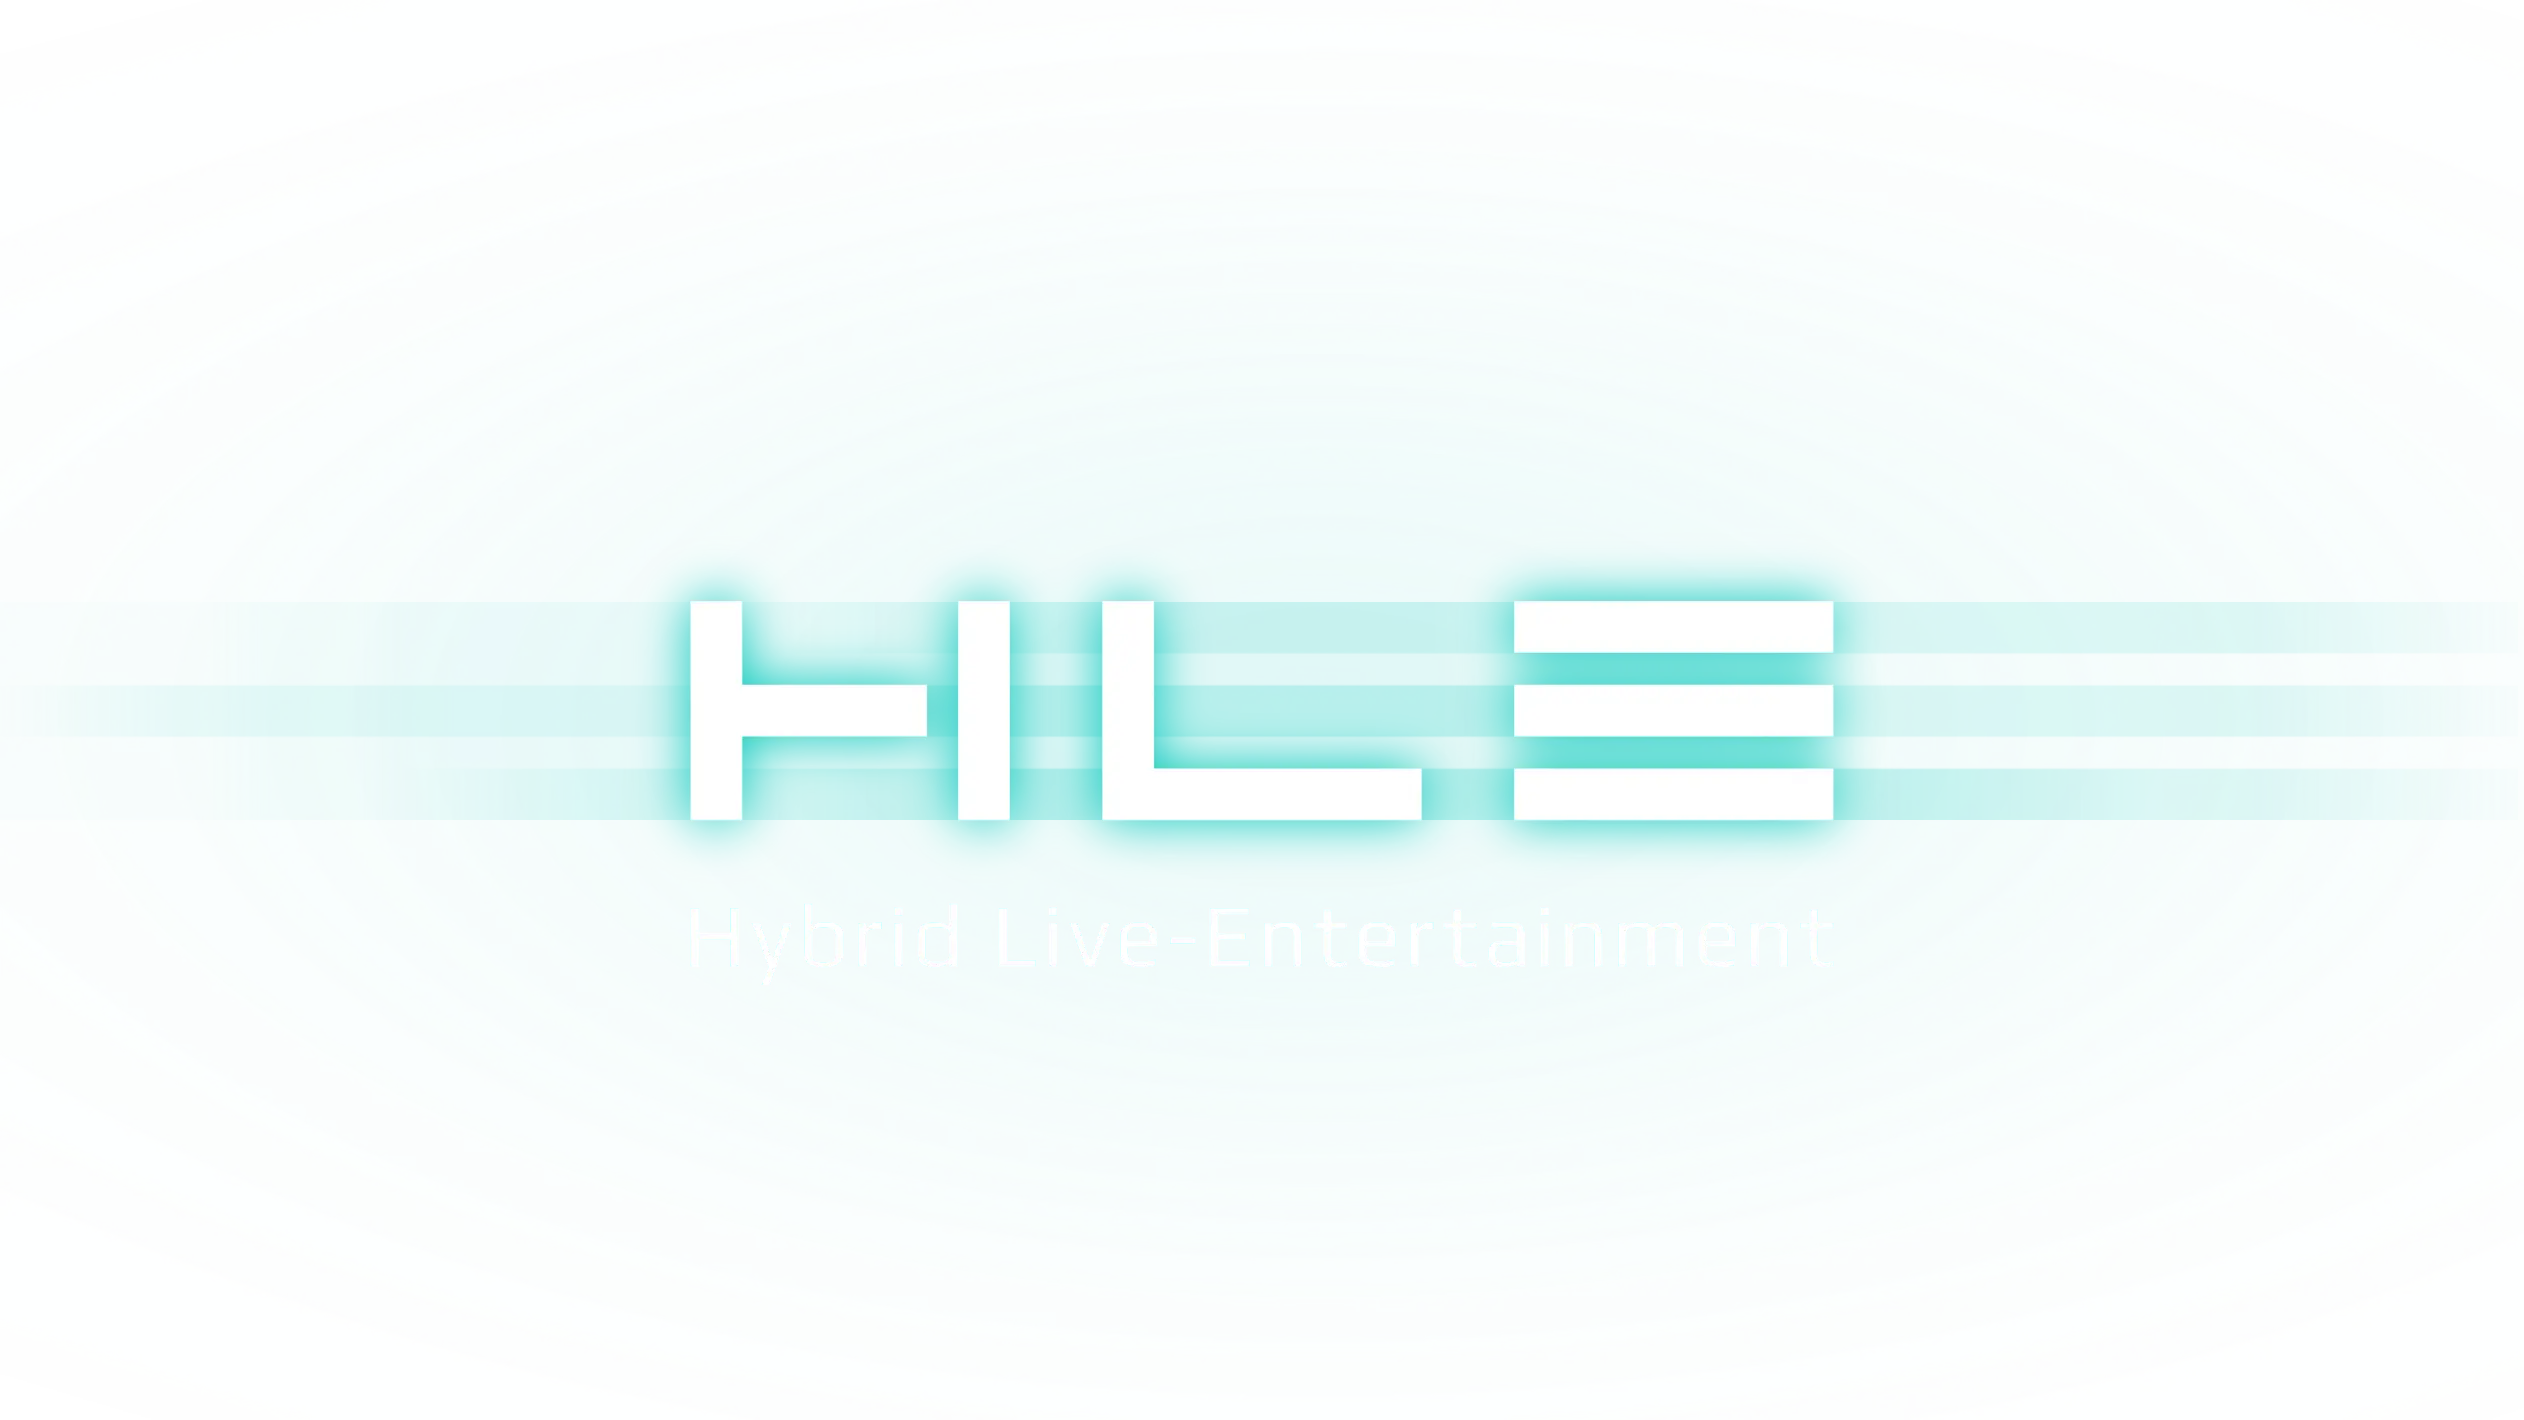 Hybrid Live-Entertainment